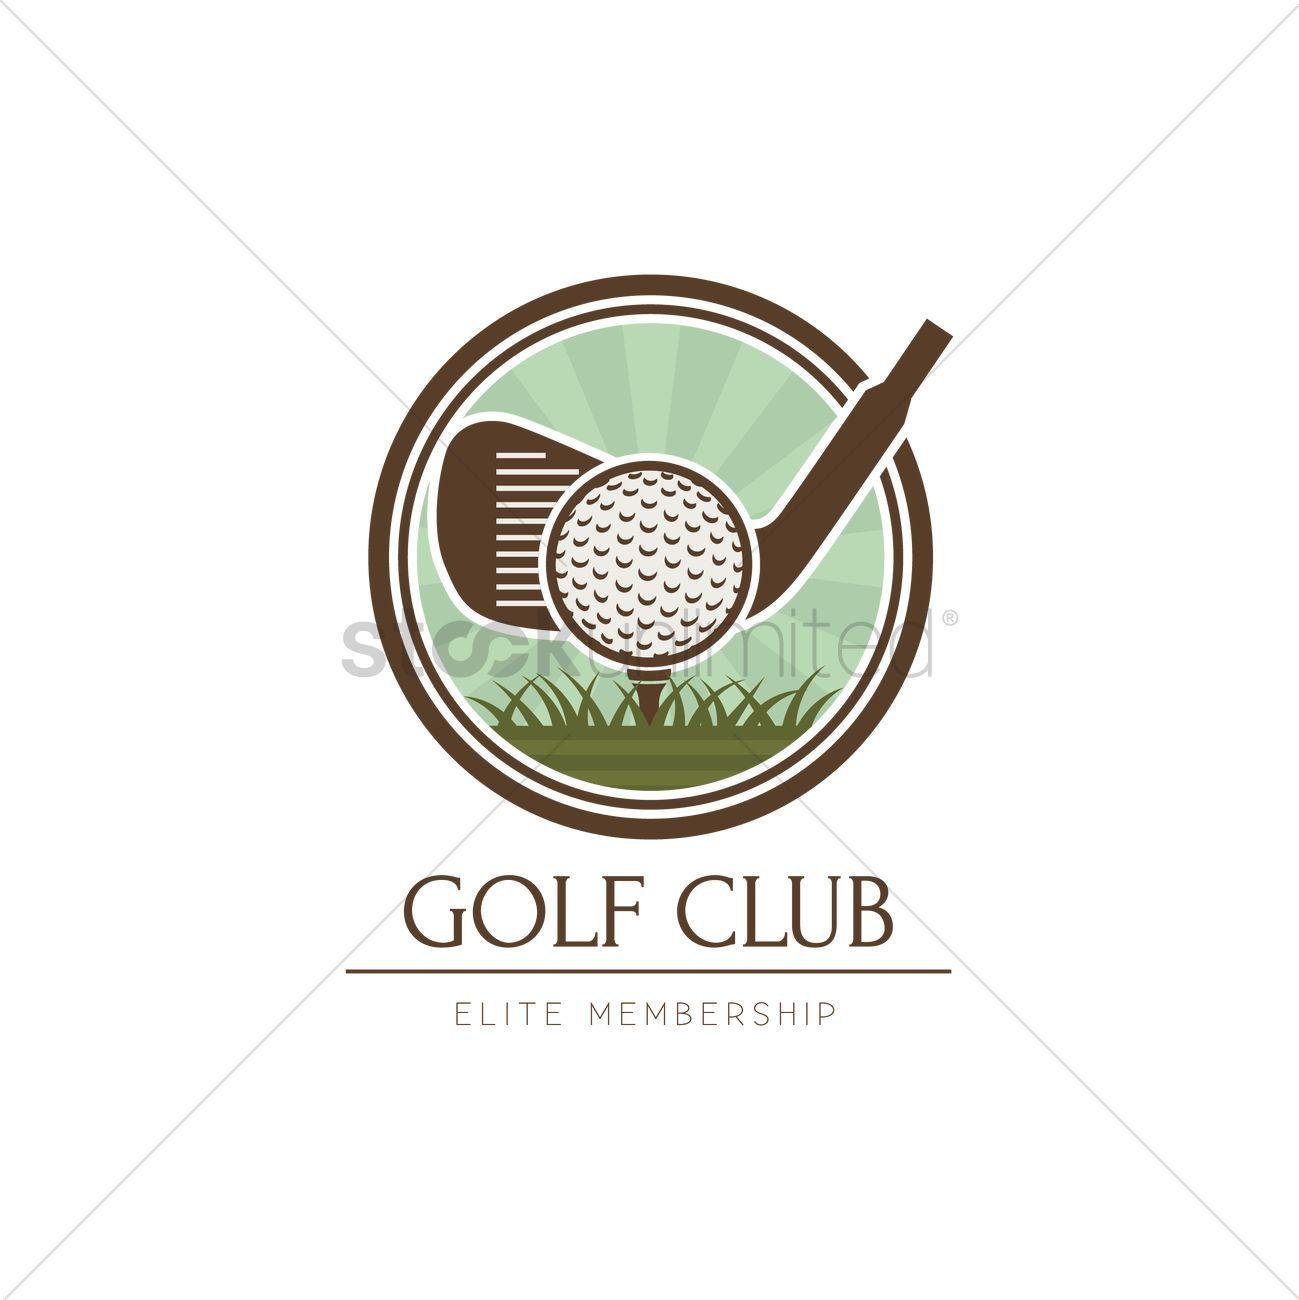 Golf Club Logo - Golf club logo element design Vector Image - 2008756 | StockUnlimited